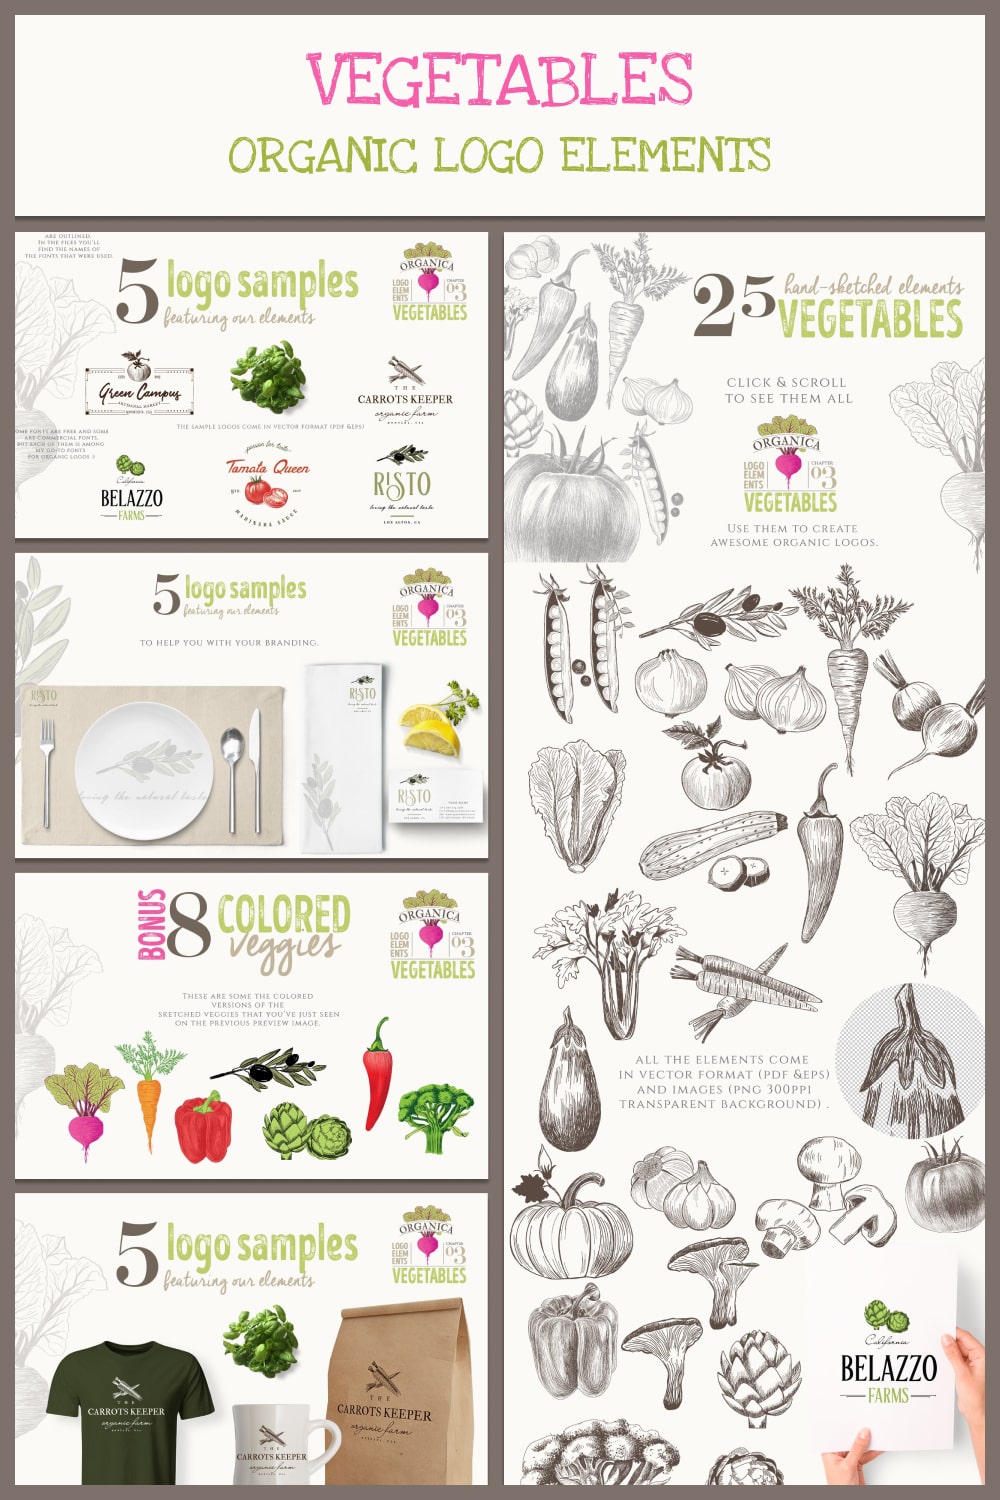 organic logo elements – vegetables 03 min